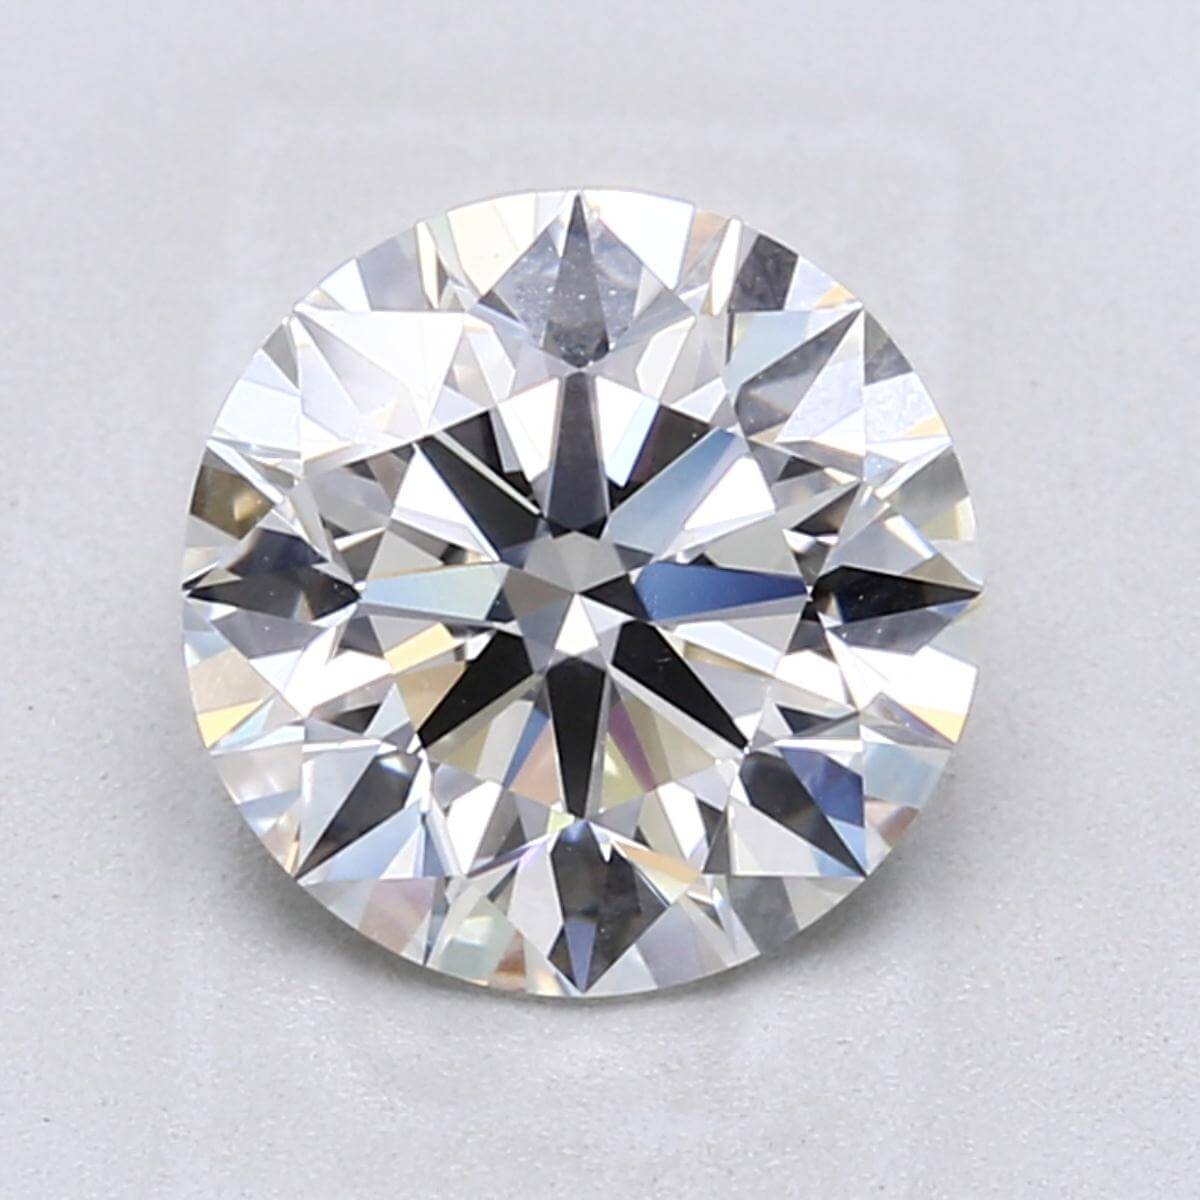 3 carat H color VS1 clarity diamond